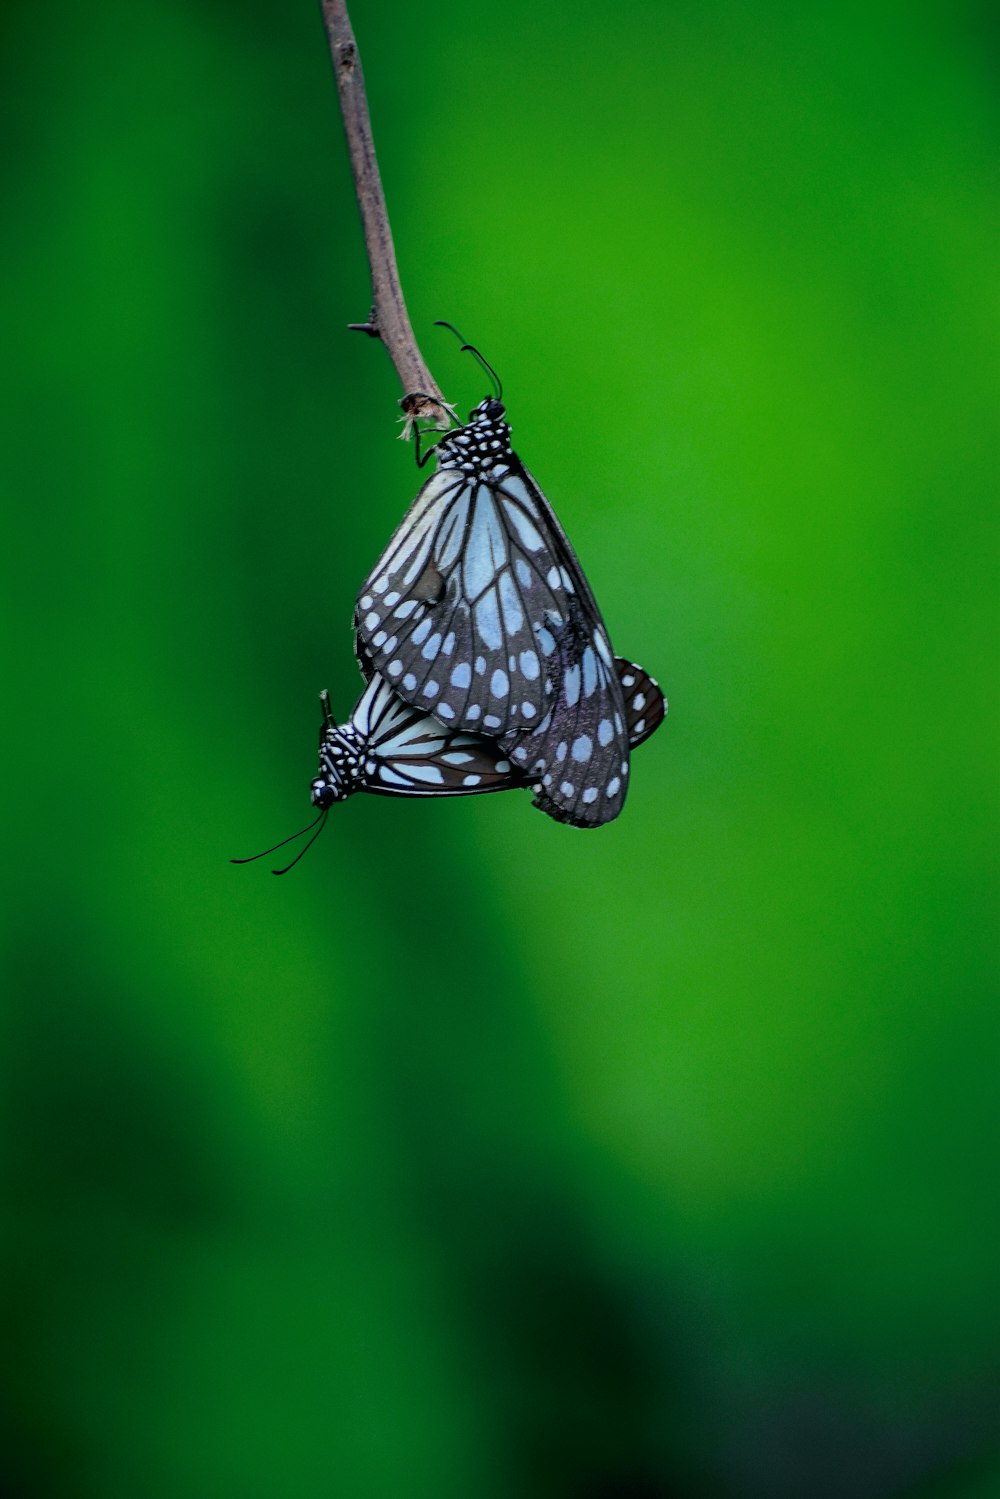 farfalla in bianco e nero appollaiata sullo stelo marrone nella fotografia ravvicinata durante il giorno